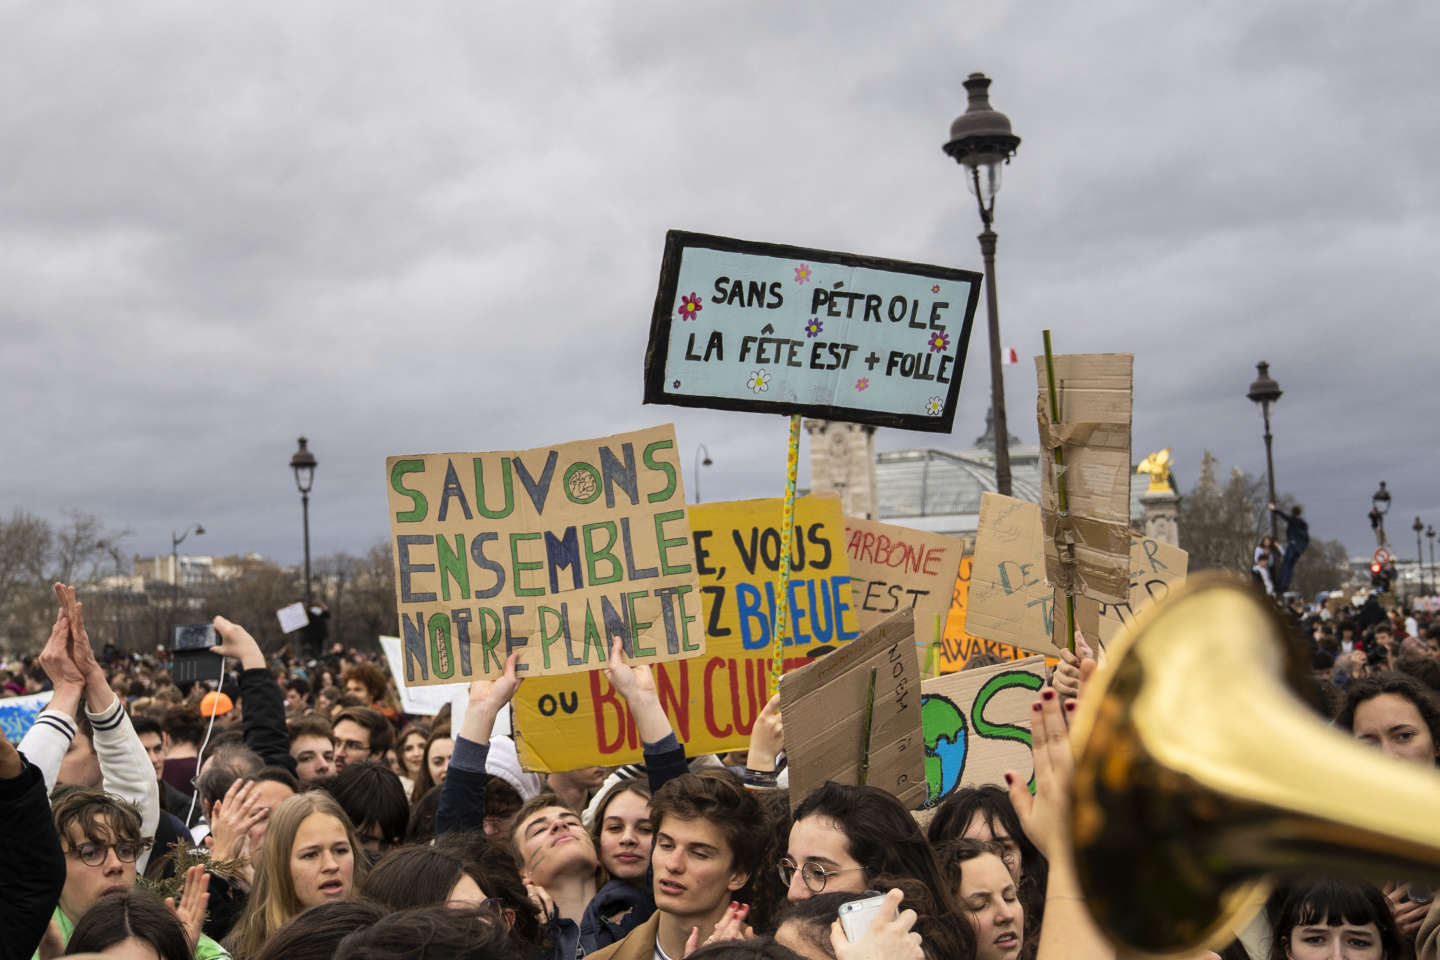 La France fait face à un fort regain de climatoscepticisme sur Twitter